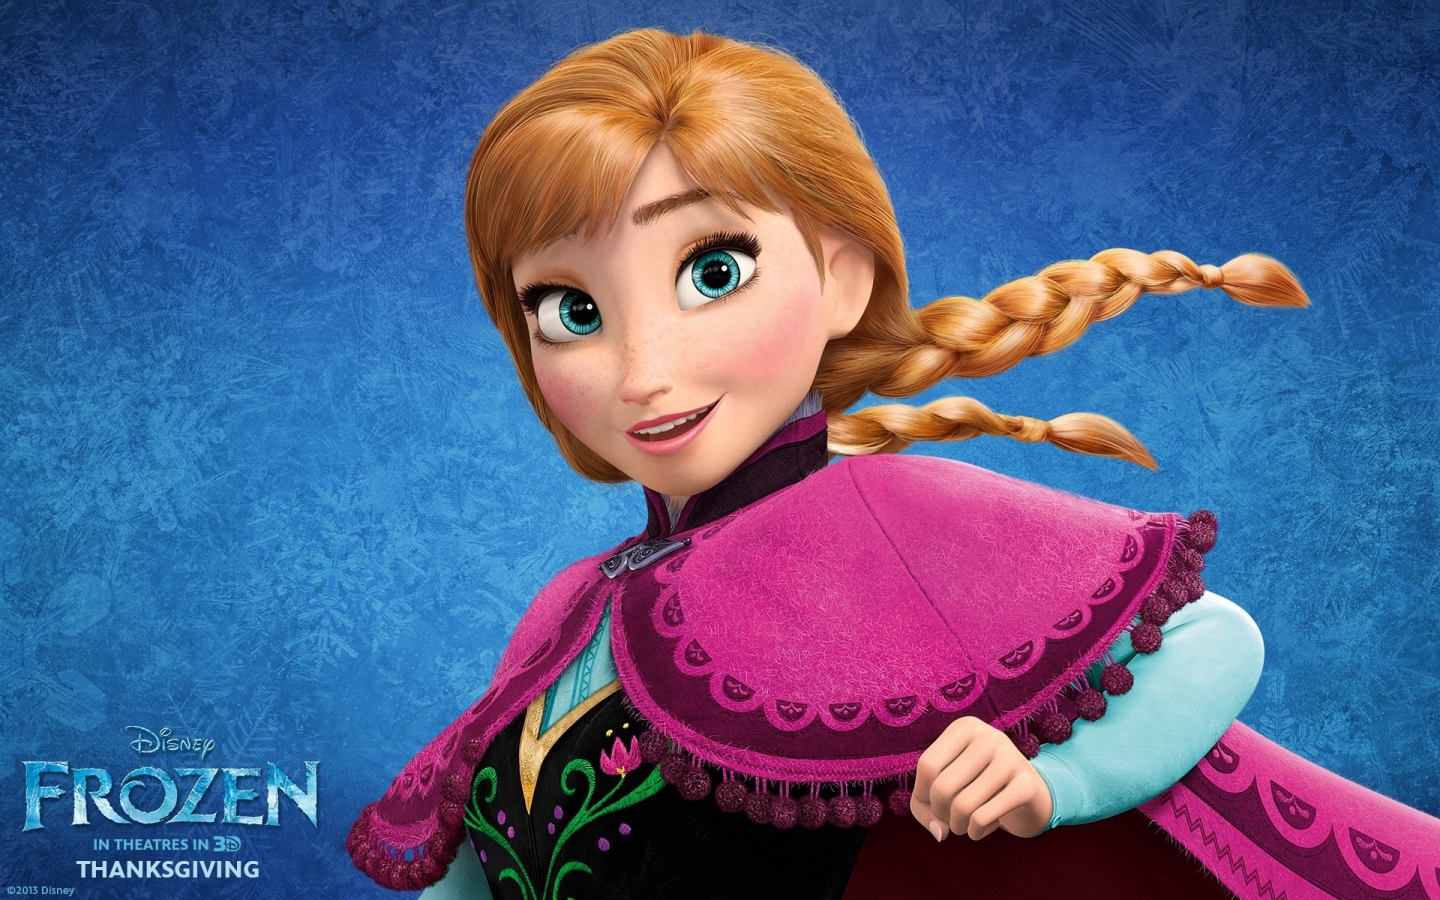 Frozen Anna for 1440 x 900 widescreen resolution